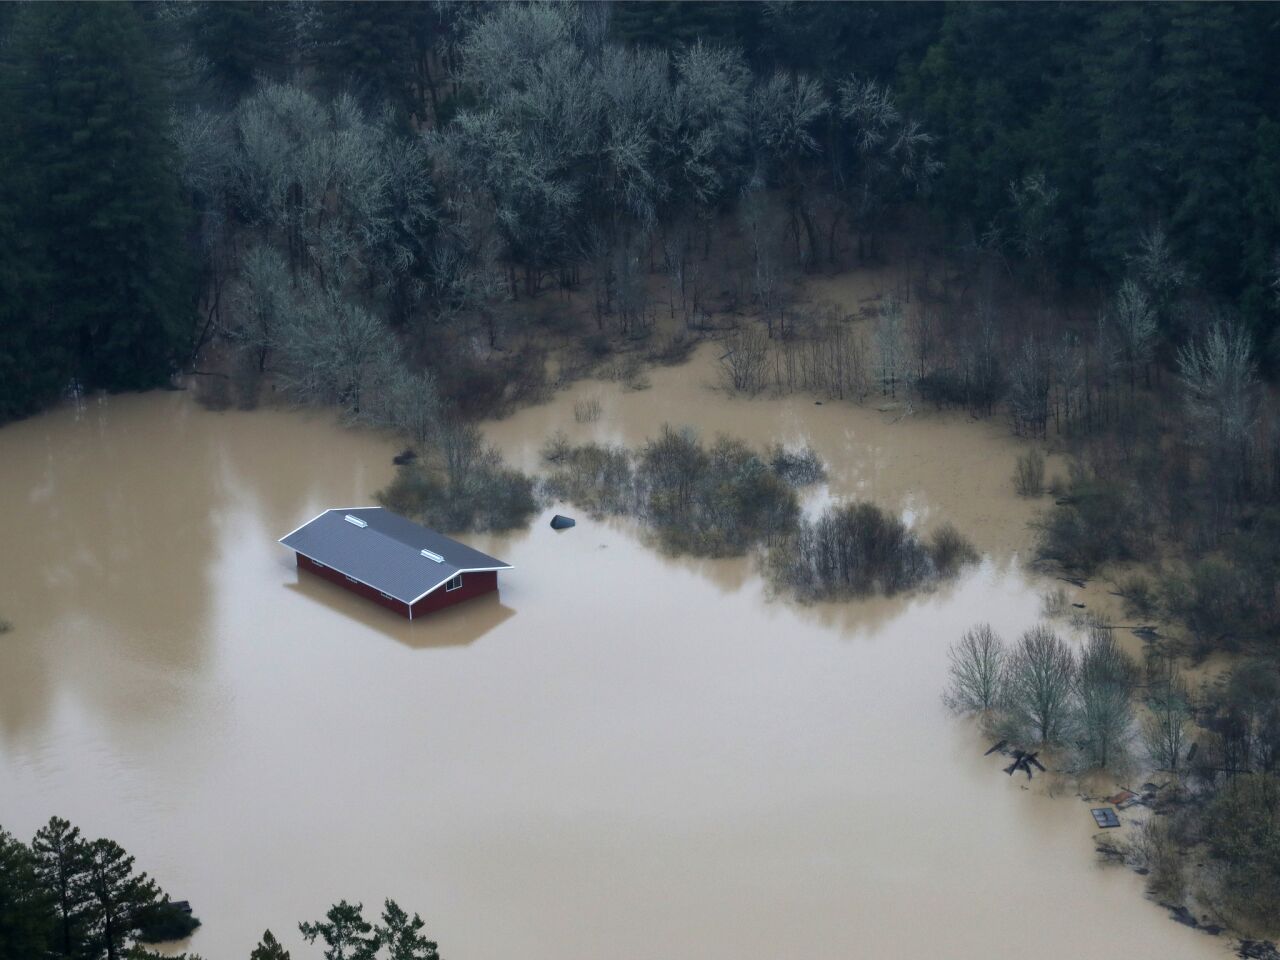 Inundaciones en el norte de California